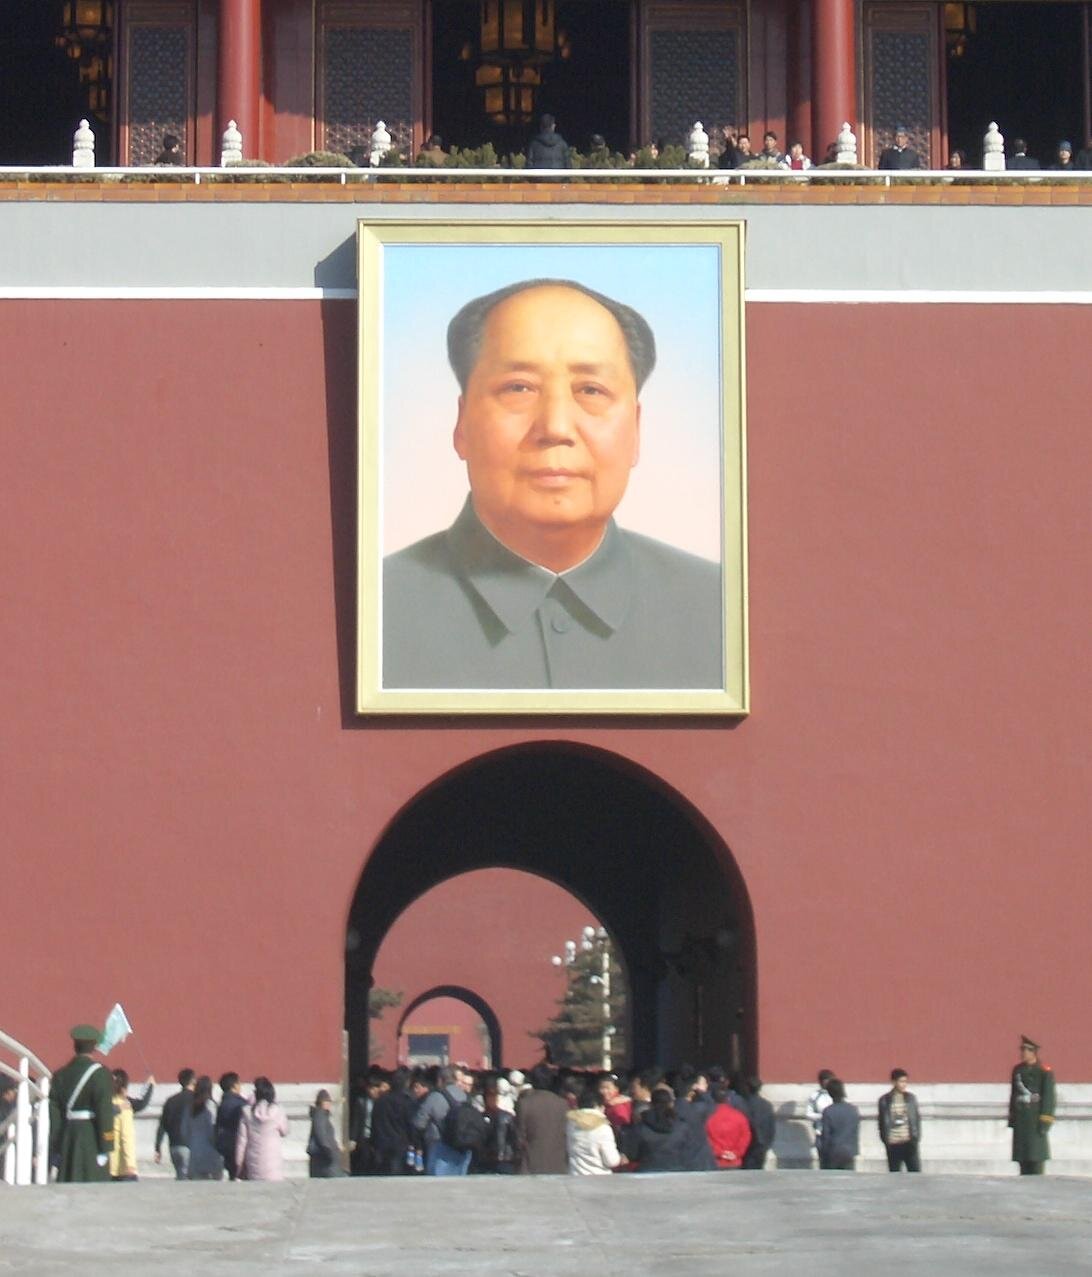 Portret Mao Tse-tunga na bramie Tiananmen Źródło: Poco a poco, Portret Mao Tse-tunga na bramie Tiananmen, Fotografia, licencja: CC BY-SA 3.0.